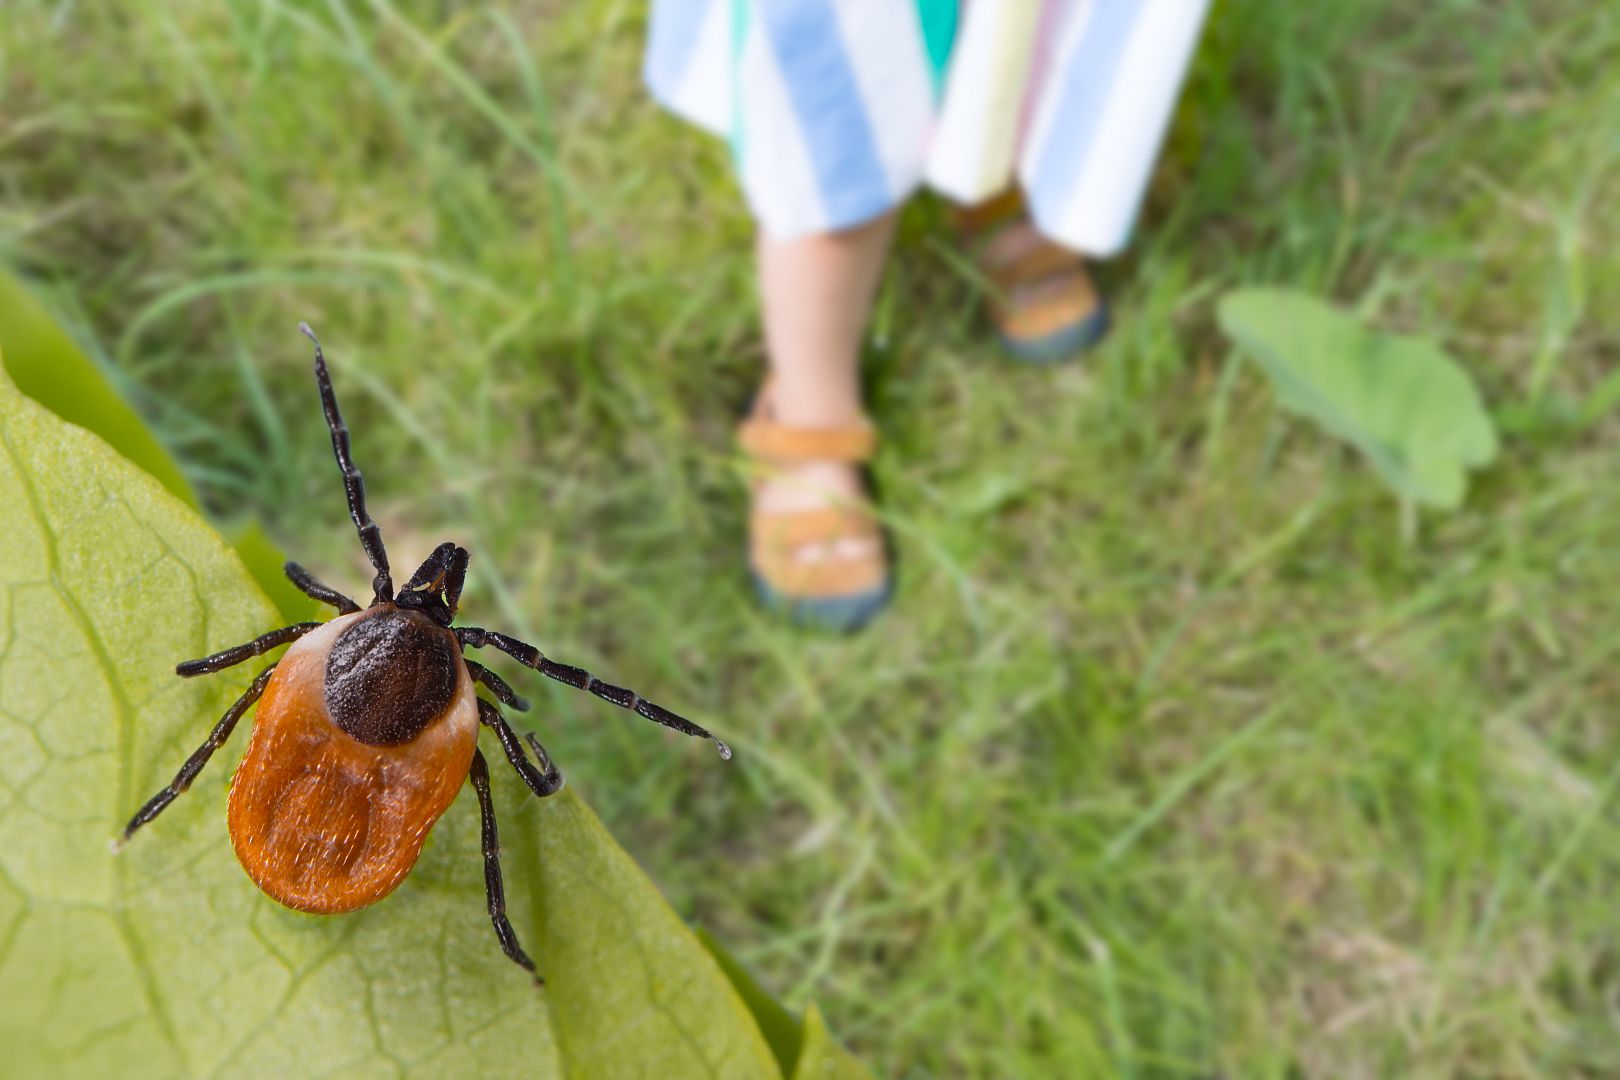 Boj se škůdci na zahradě: Jak ochránit zahradu (nejen) před hmyzem a brouky